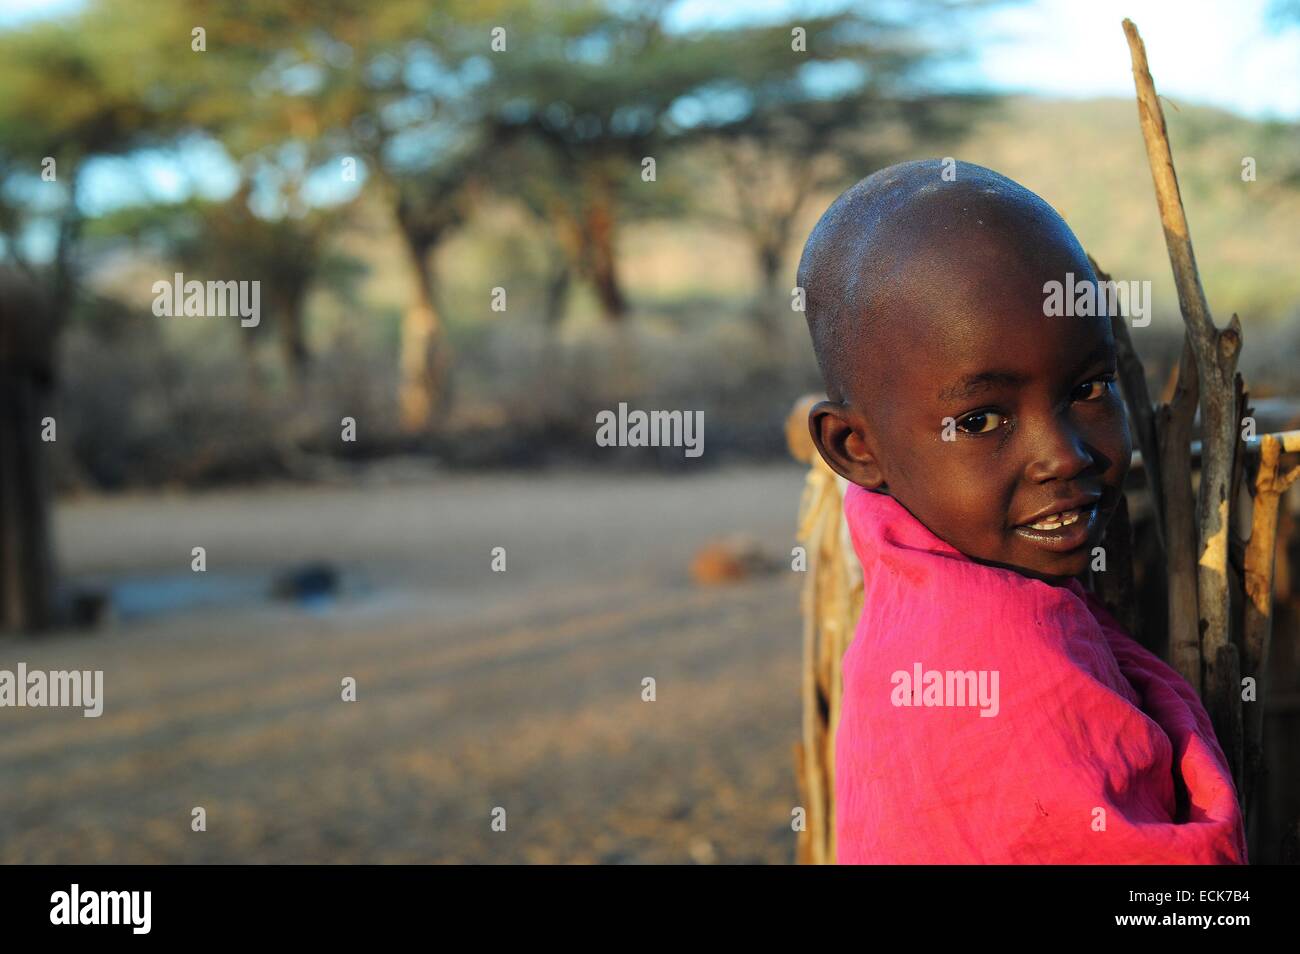 Kenya, Laikipia, Il Ngwesi, smiling girl in traditinal Manyatta village Banque D'Images